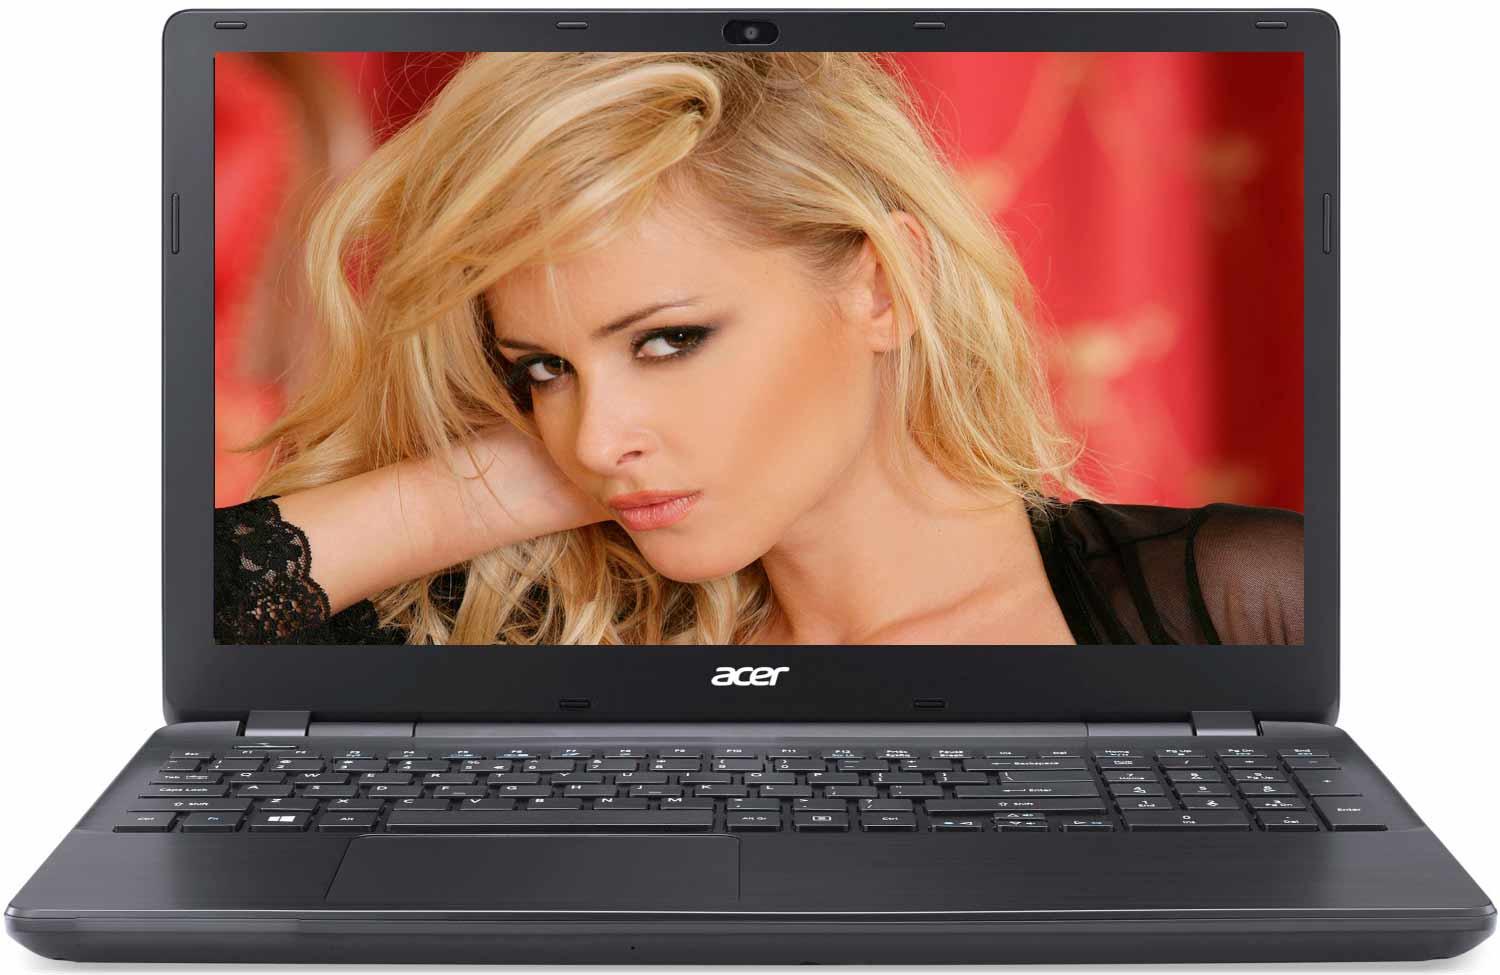   Acer Extensa EX2519-C298 (NX.EFAER.051)  1